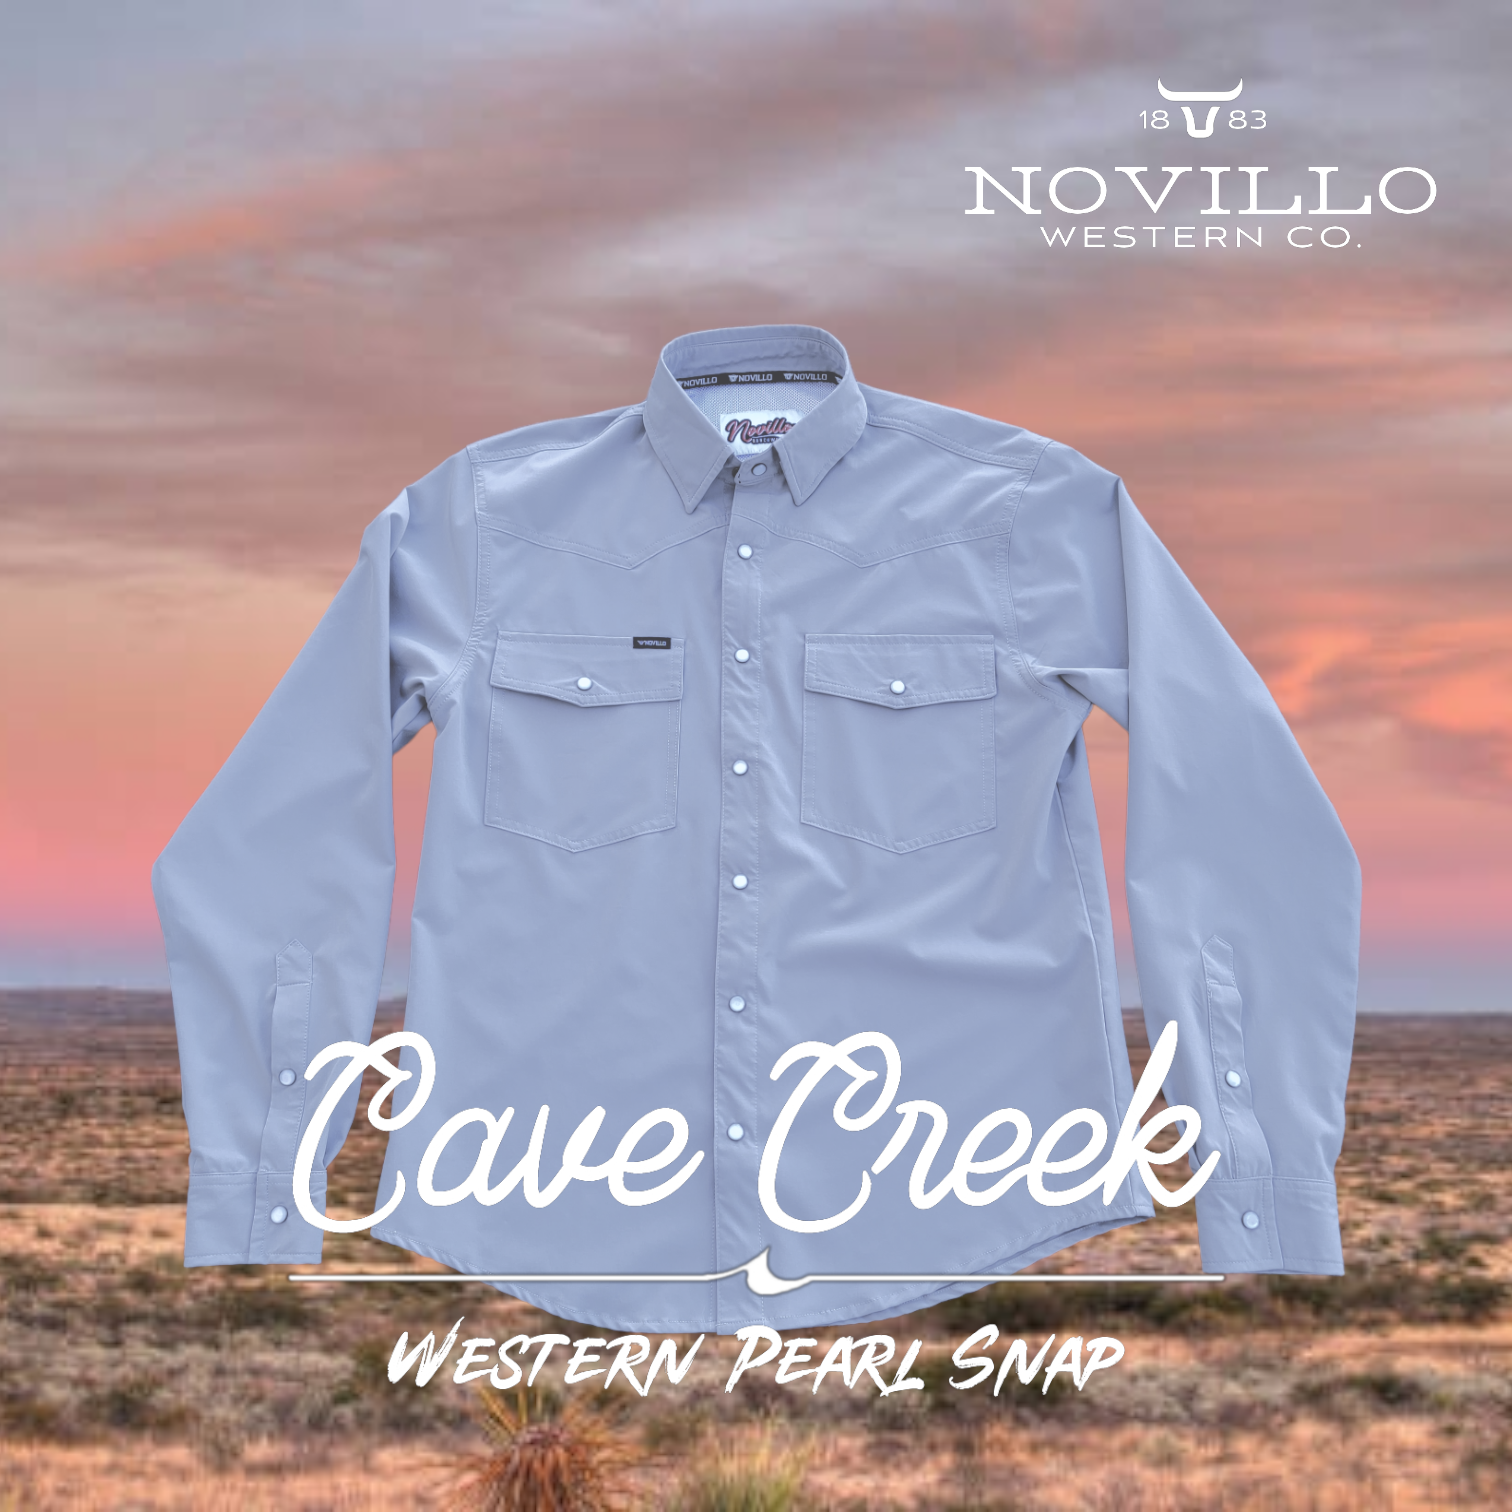 The Nueces Pearl Snap – Novillo Western